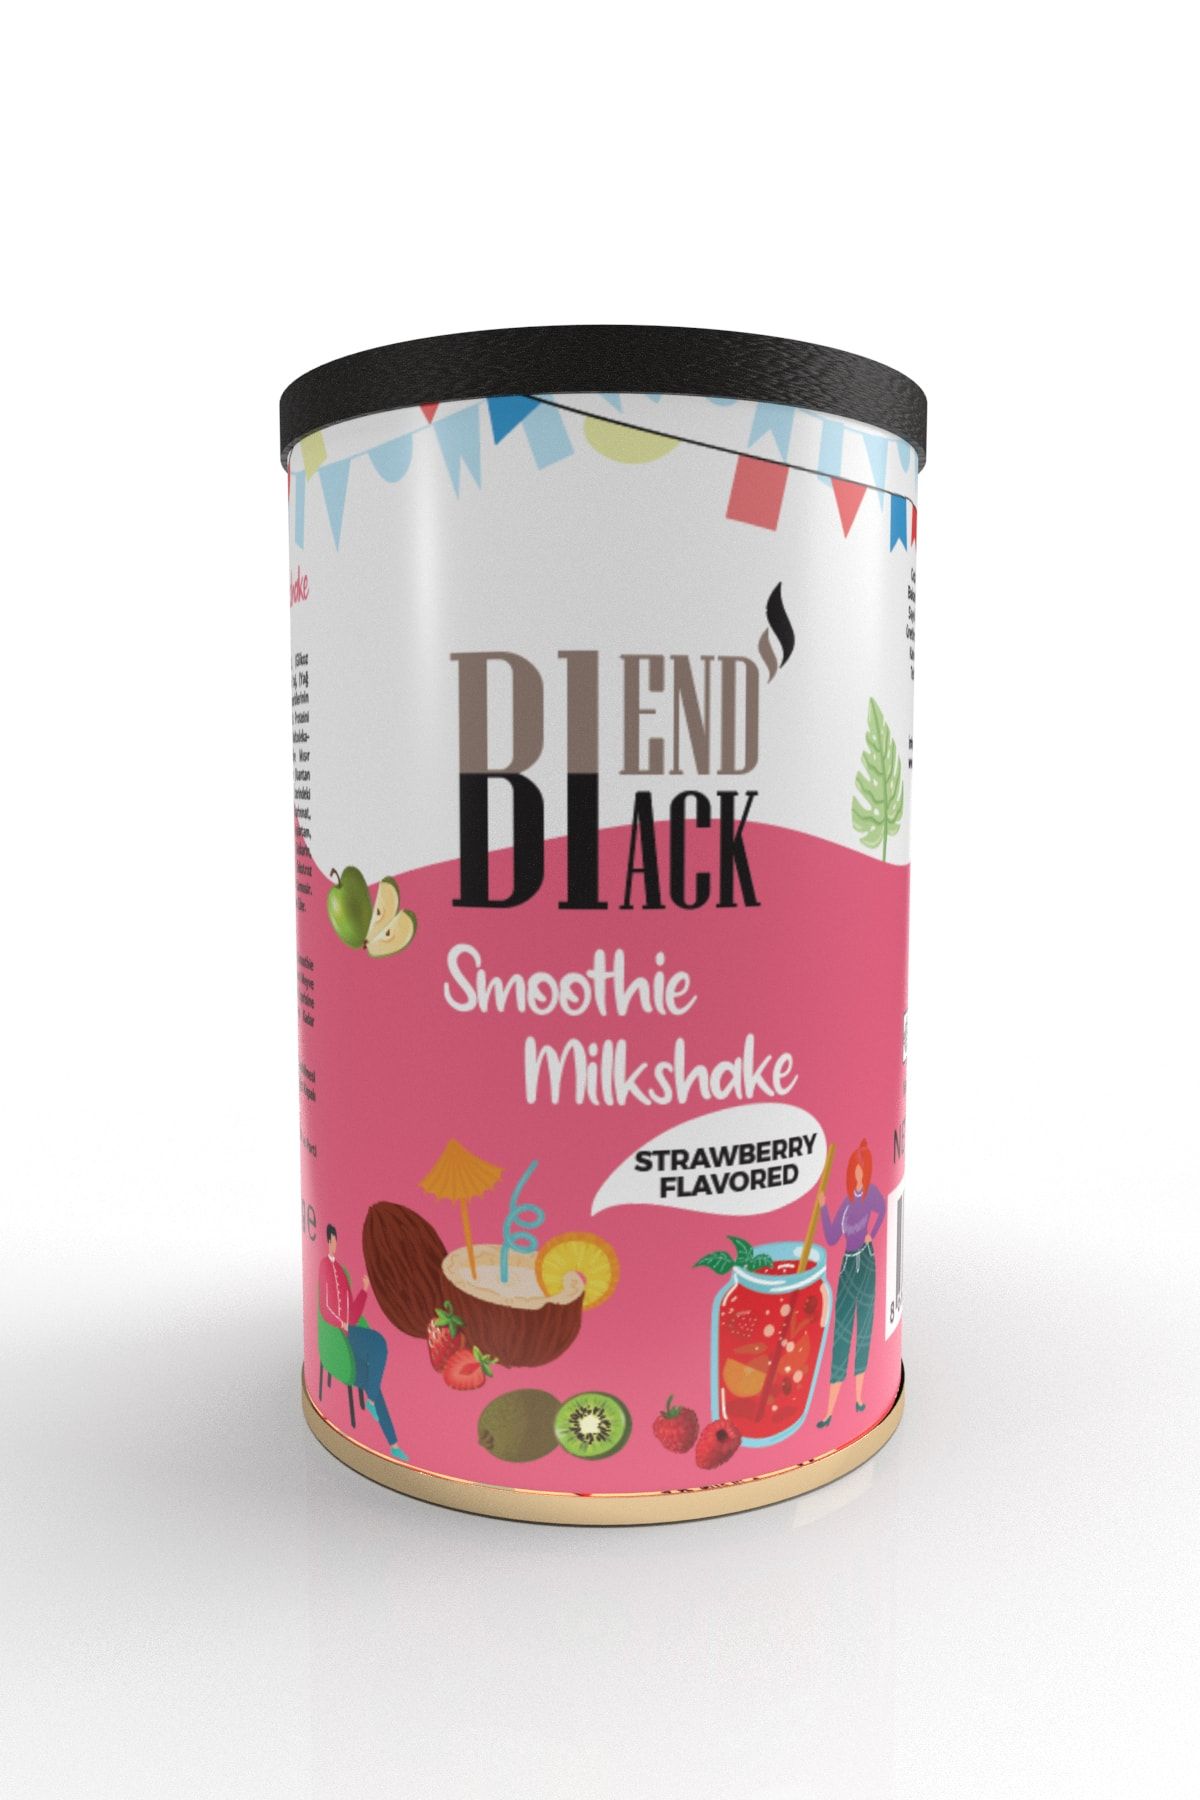 Blendblack Smoothie/milkshake Strawberry Flavored 500gr Teneke Kutu